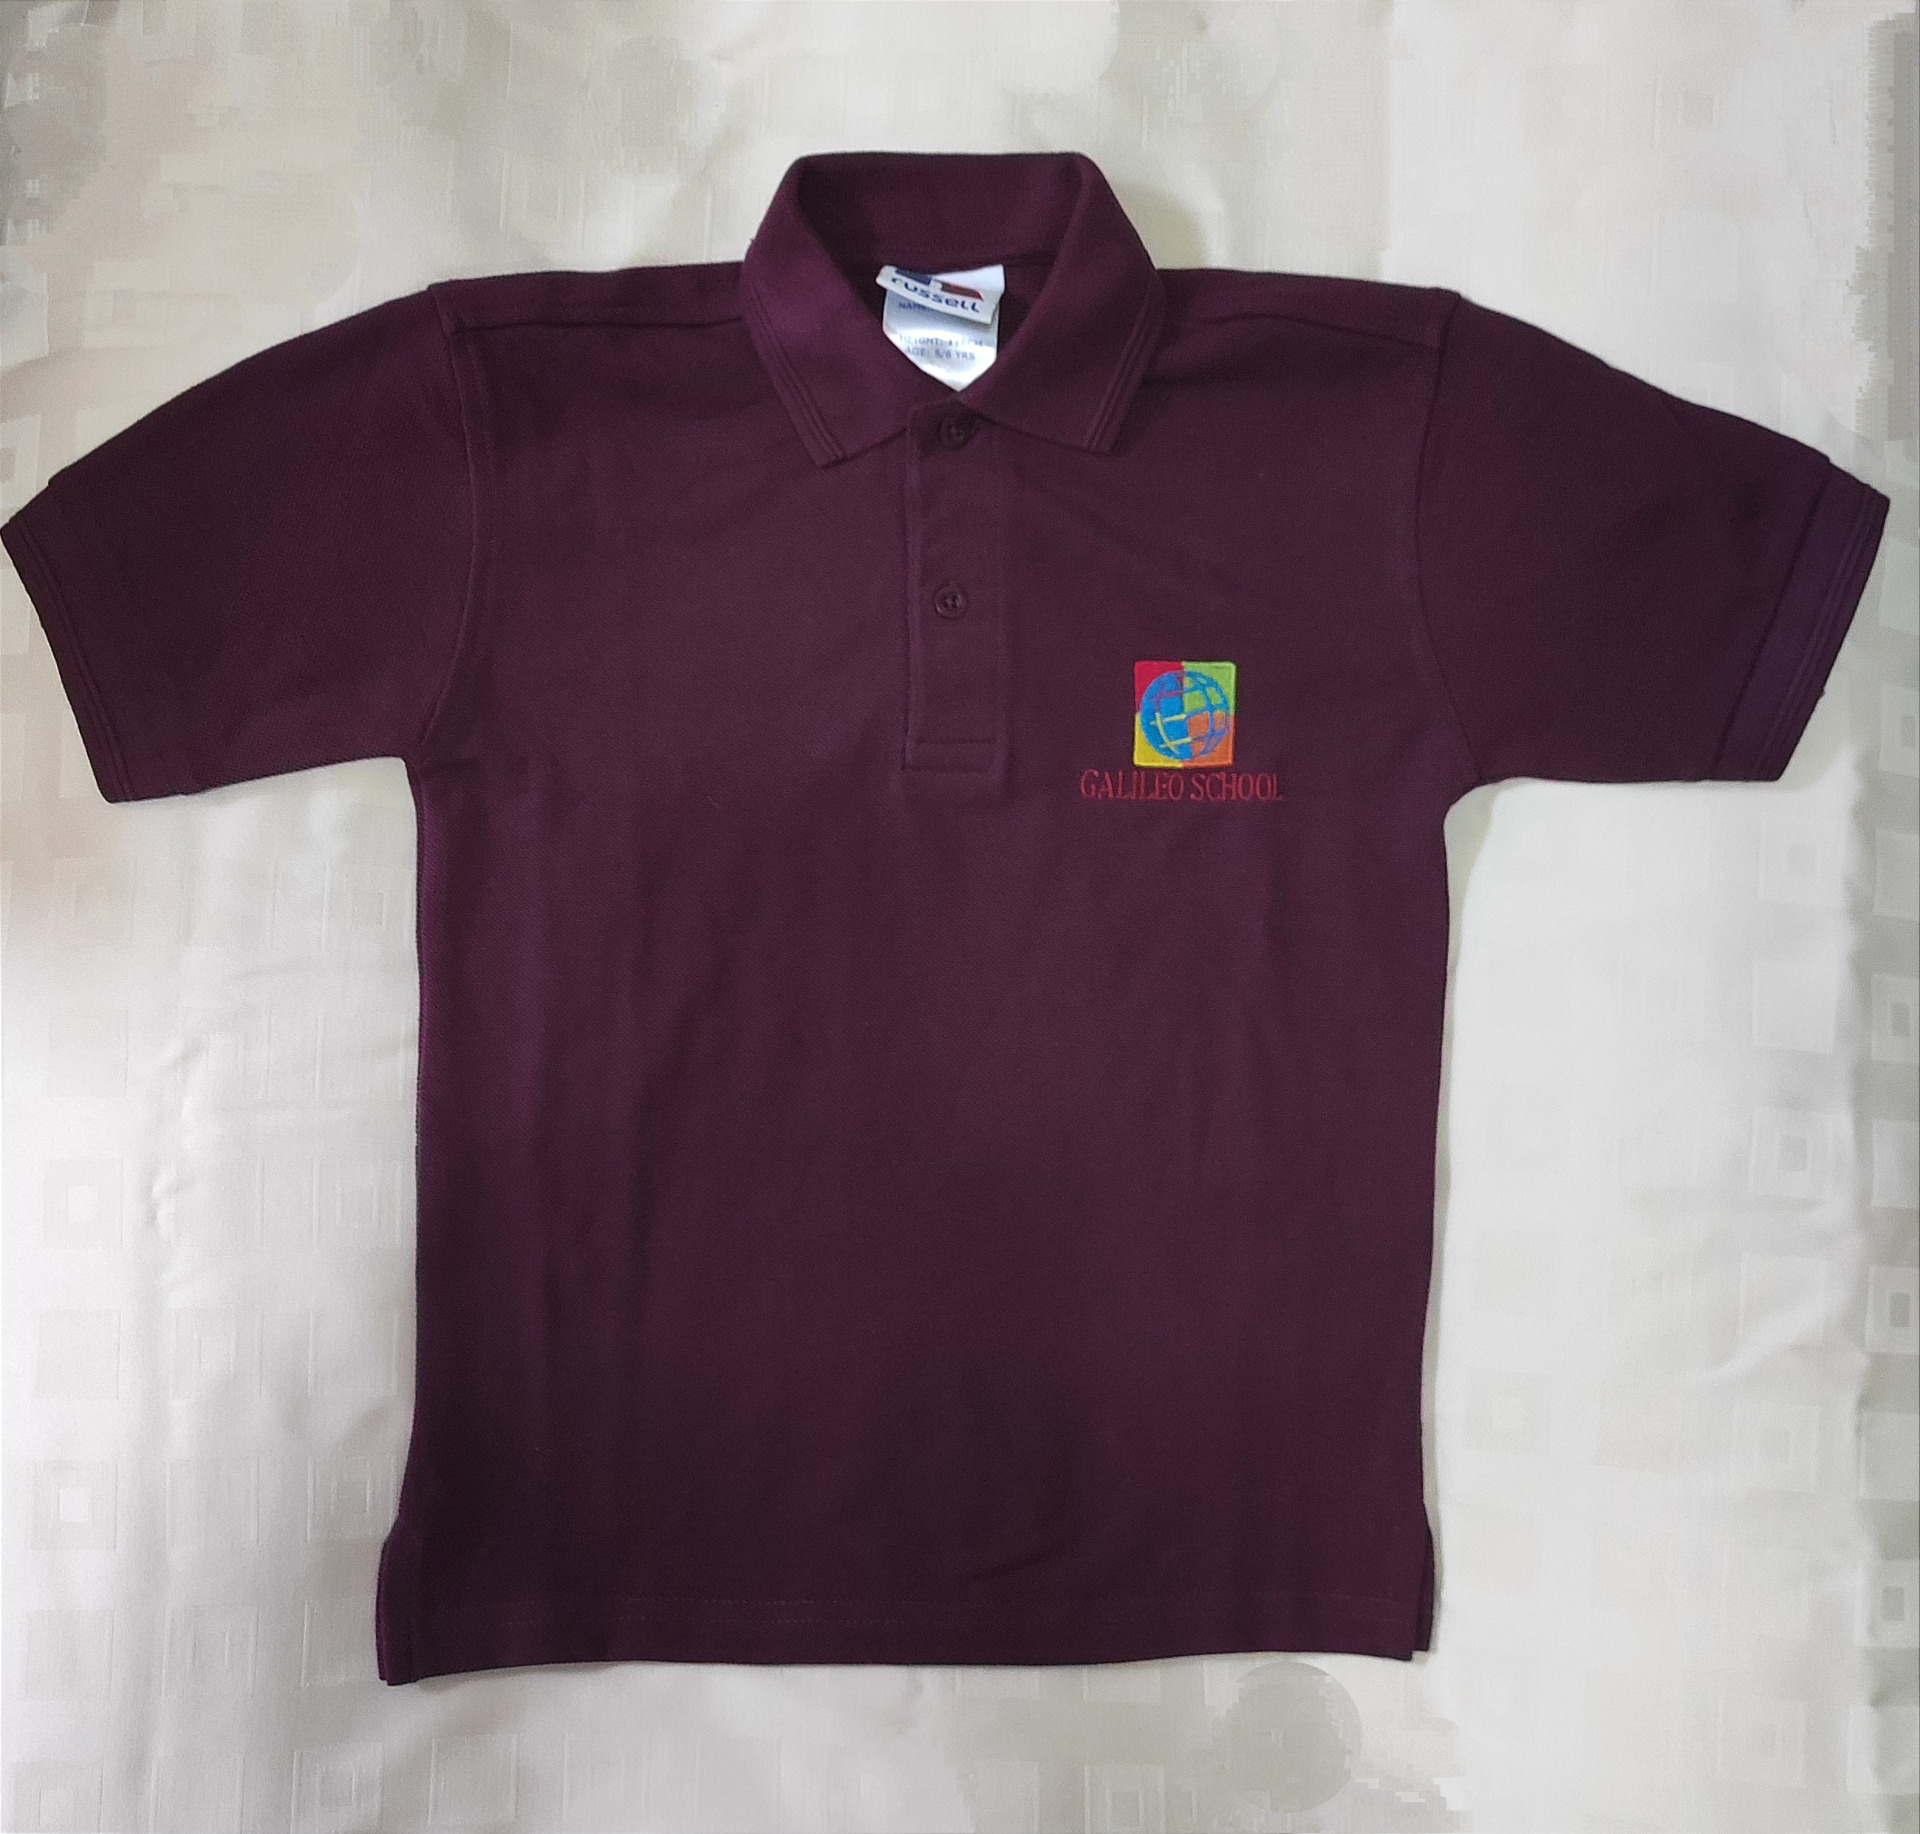 polo košela krátky rukáv - bordová / short sleeve polo shirt - burgundy; 

cena / price: cena 14€